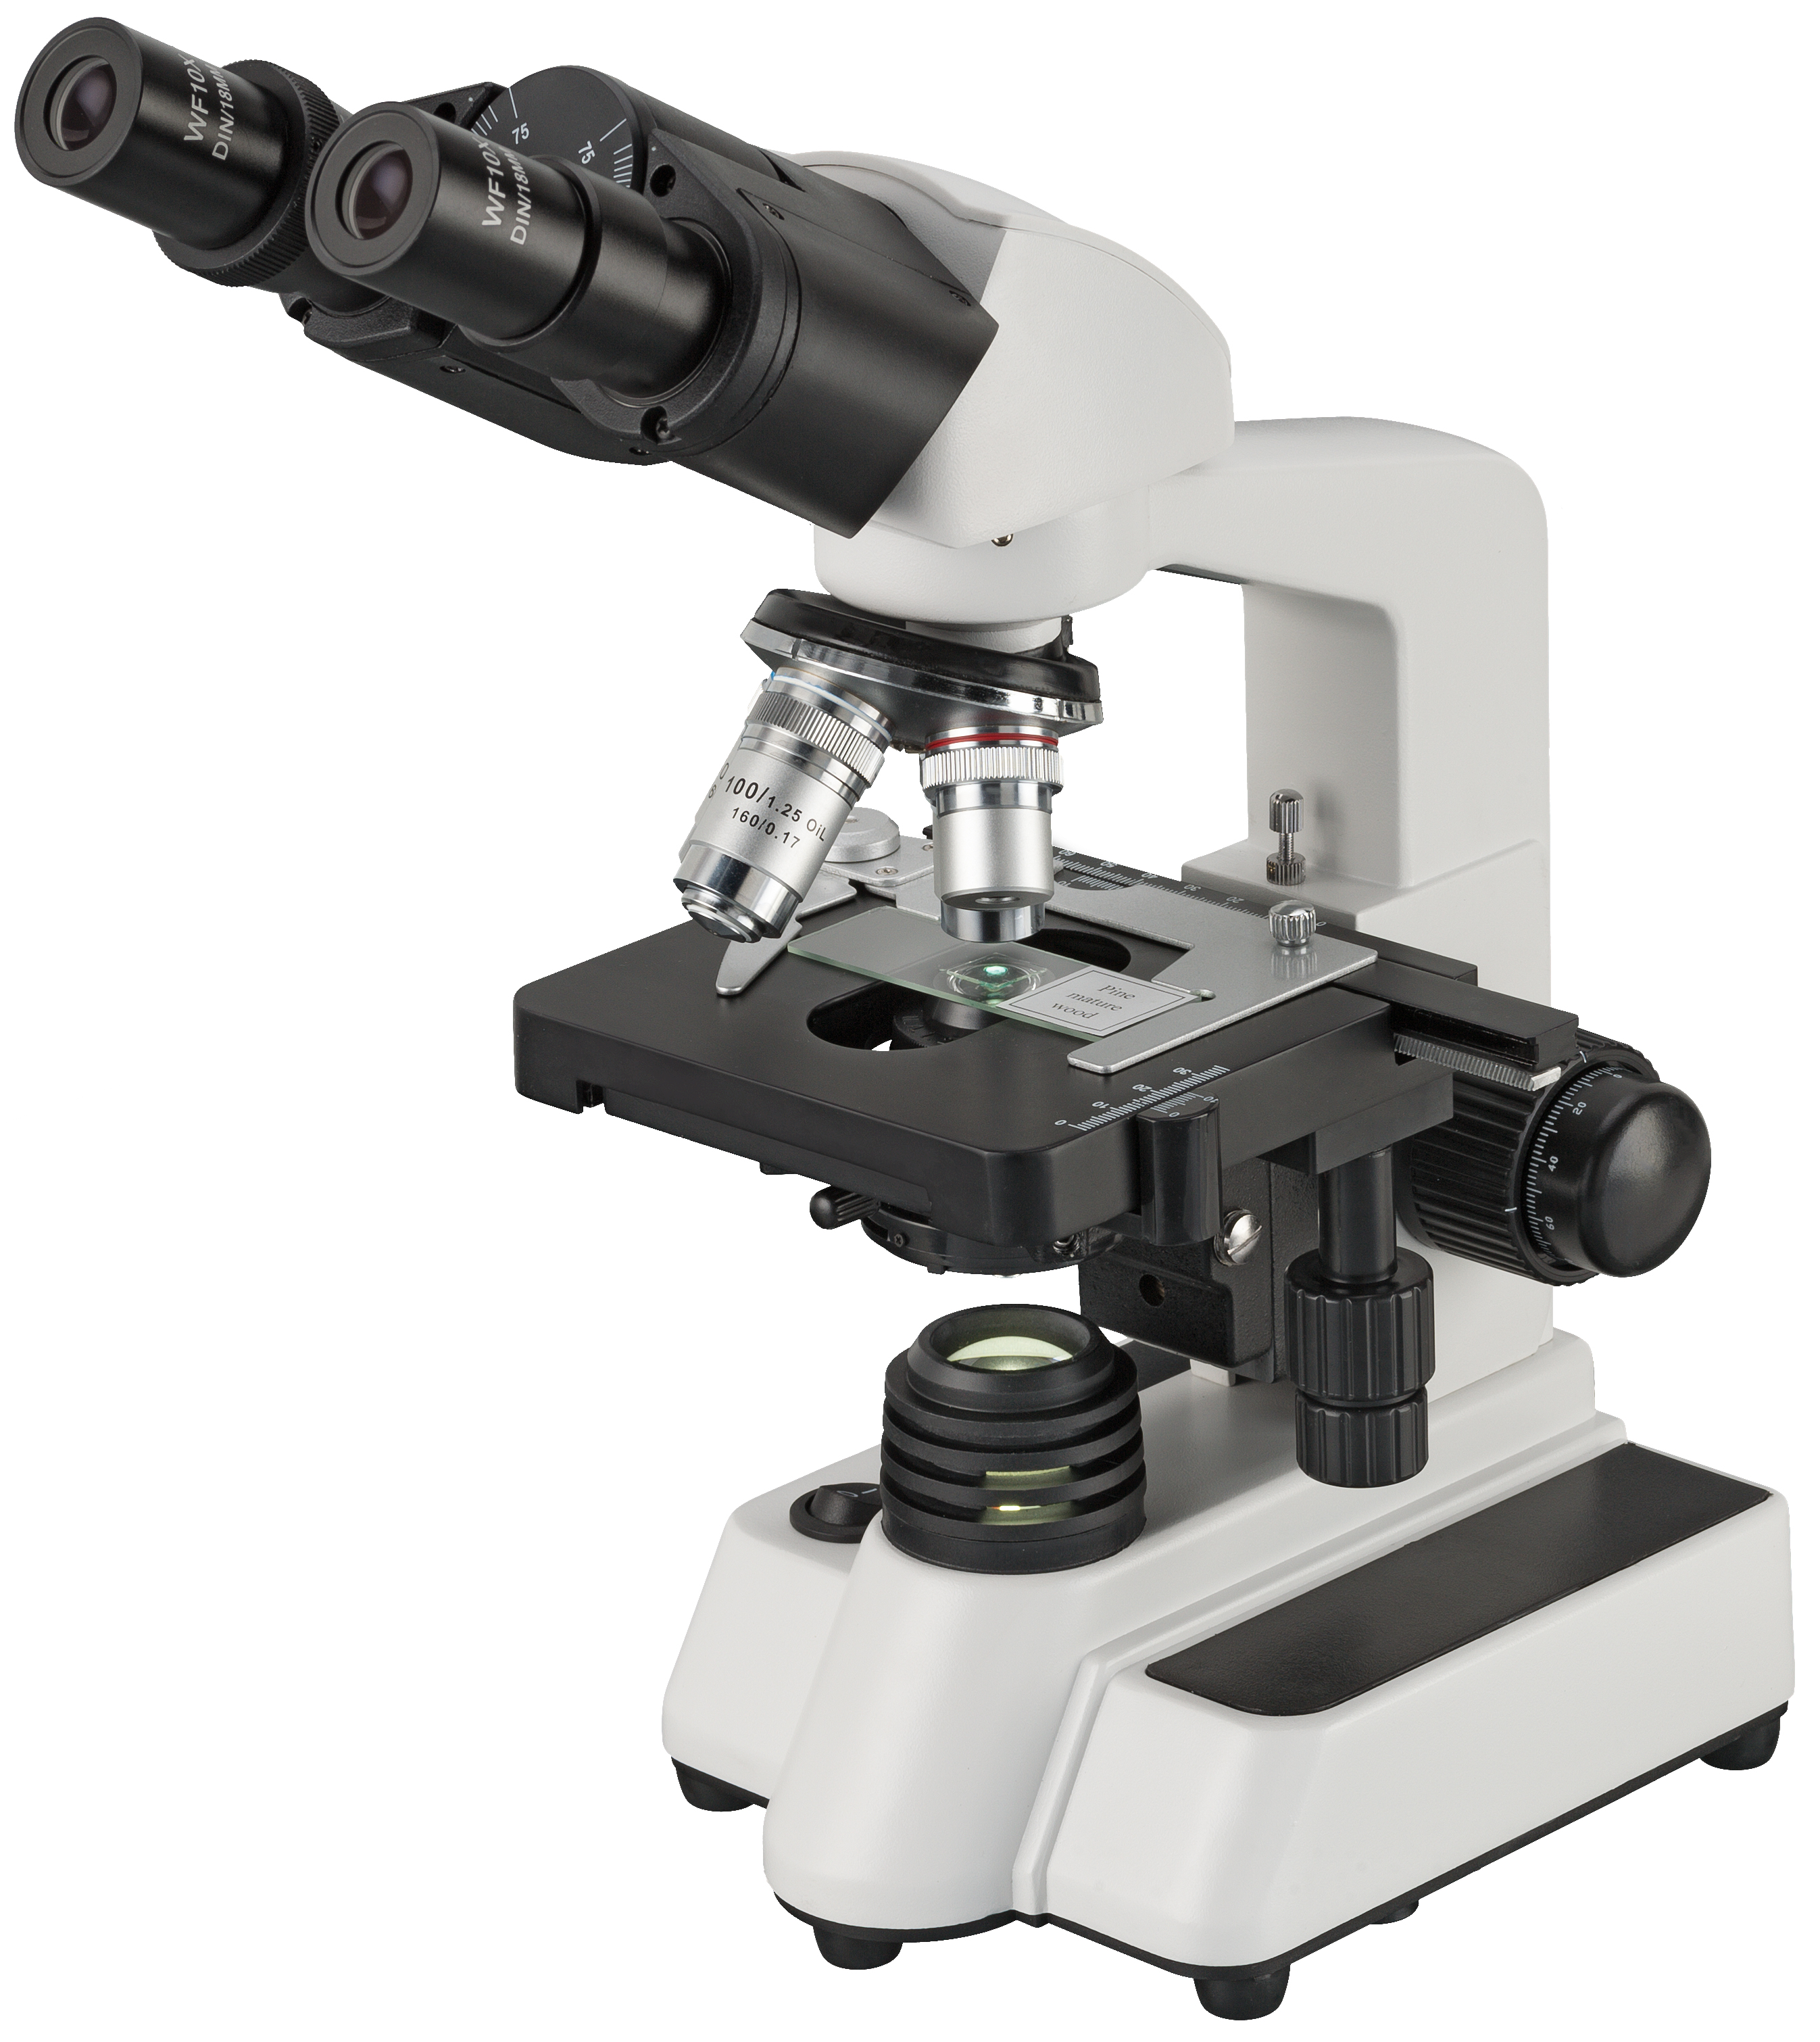 Microscopio Bino BRESSER Researcher con cámara y muestras permanentes